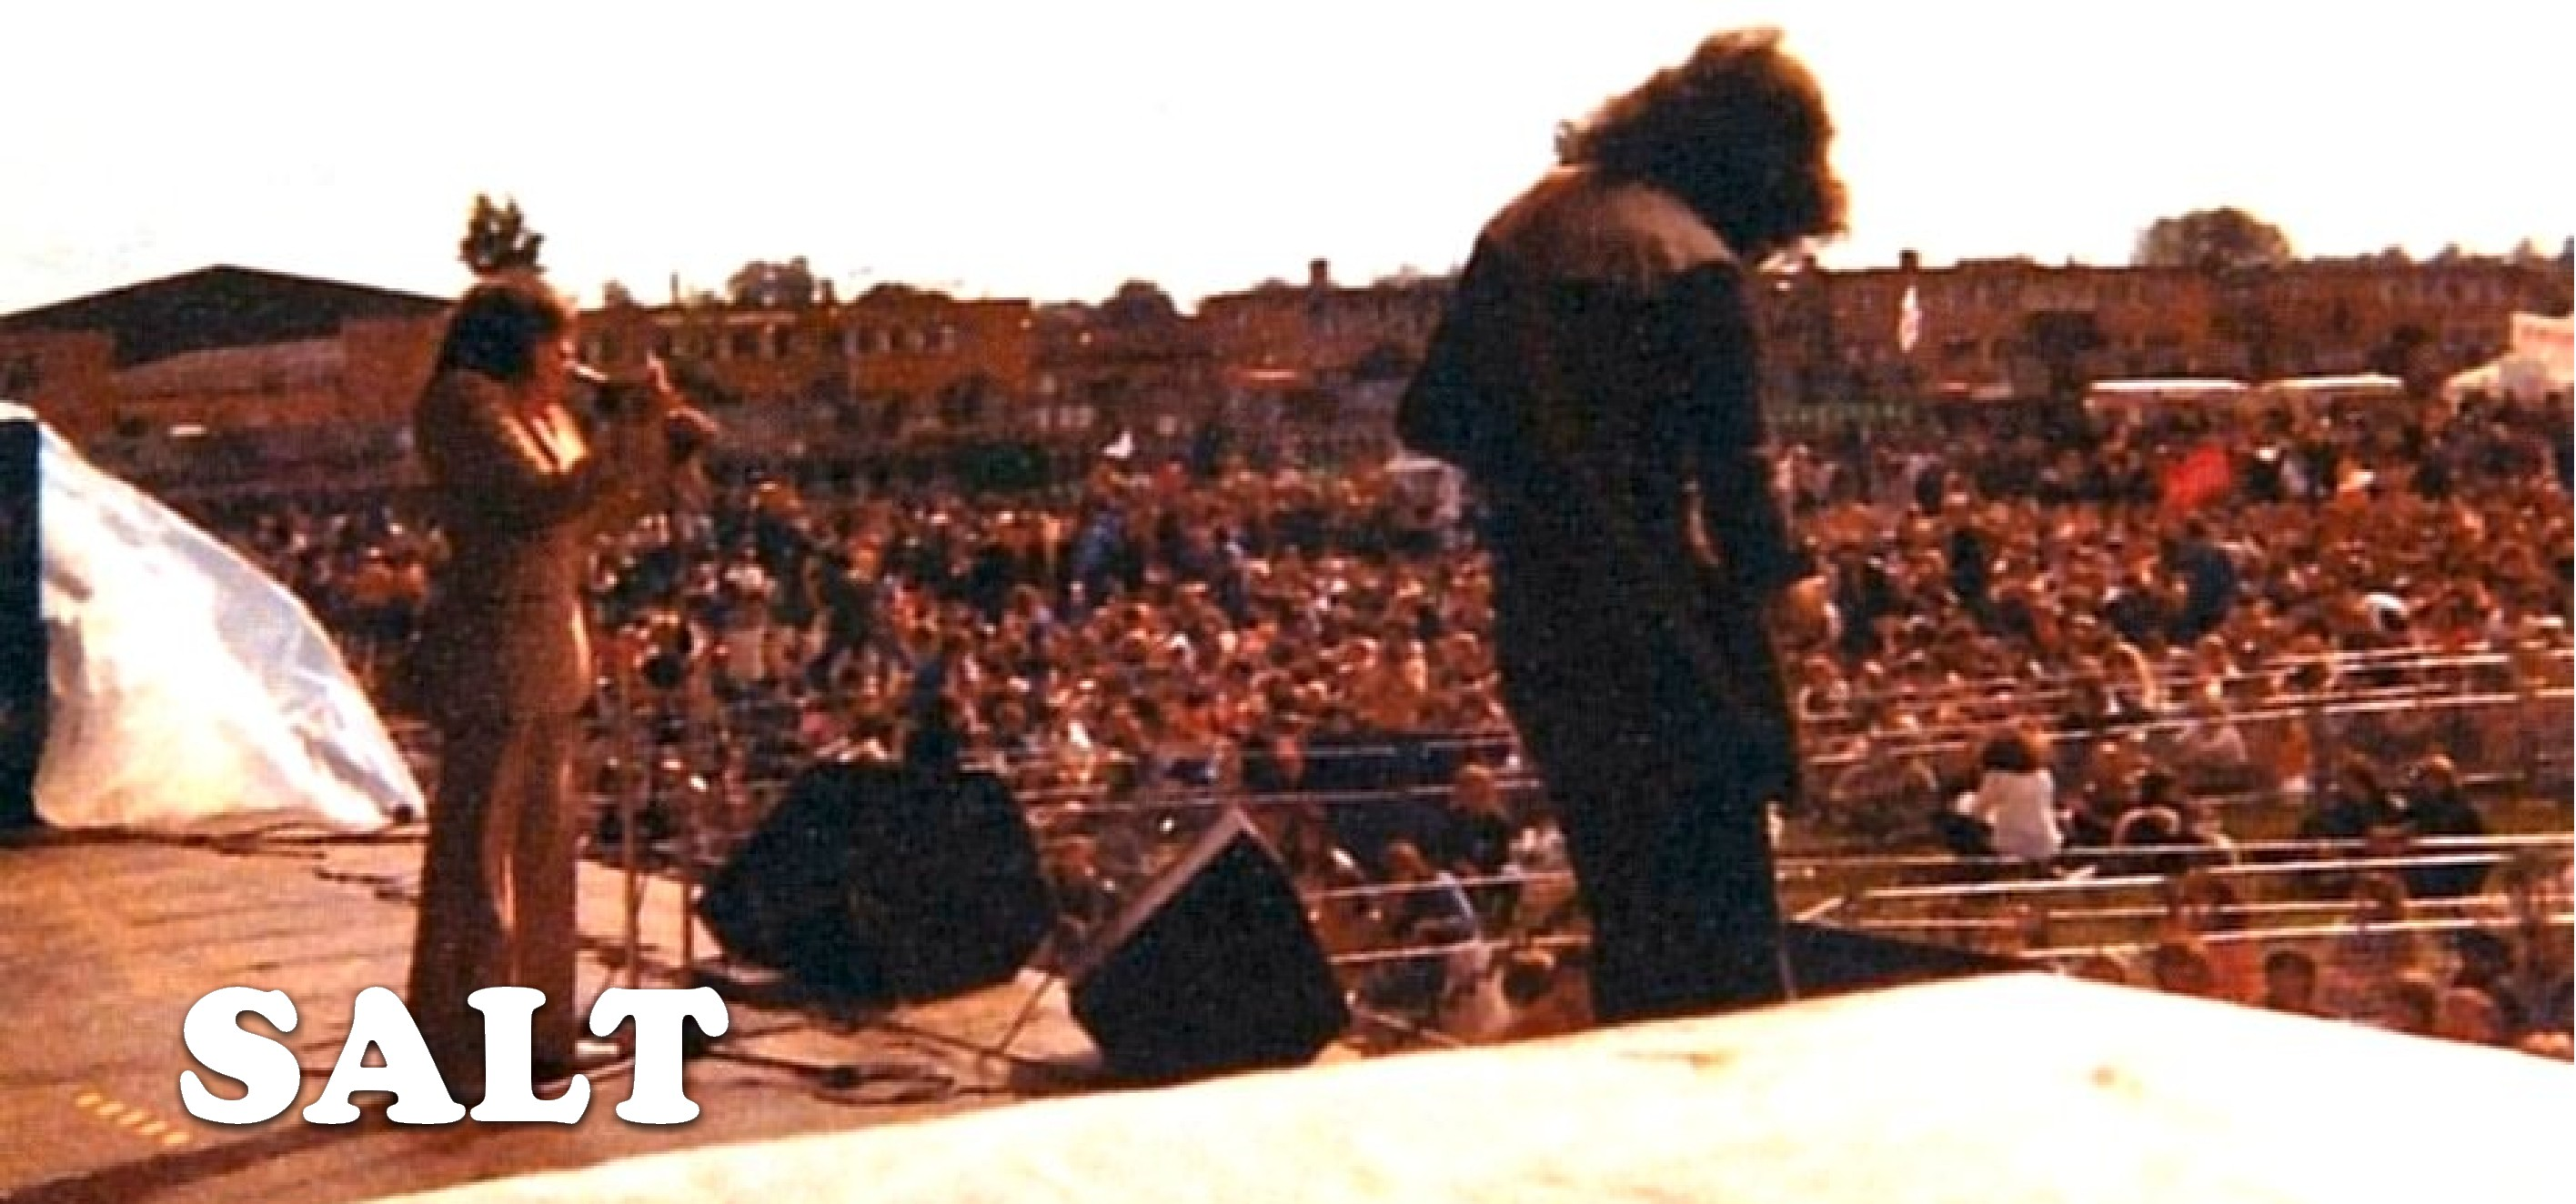 Mick Clarke - SALT at Reading Festival 1977